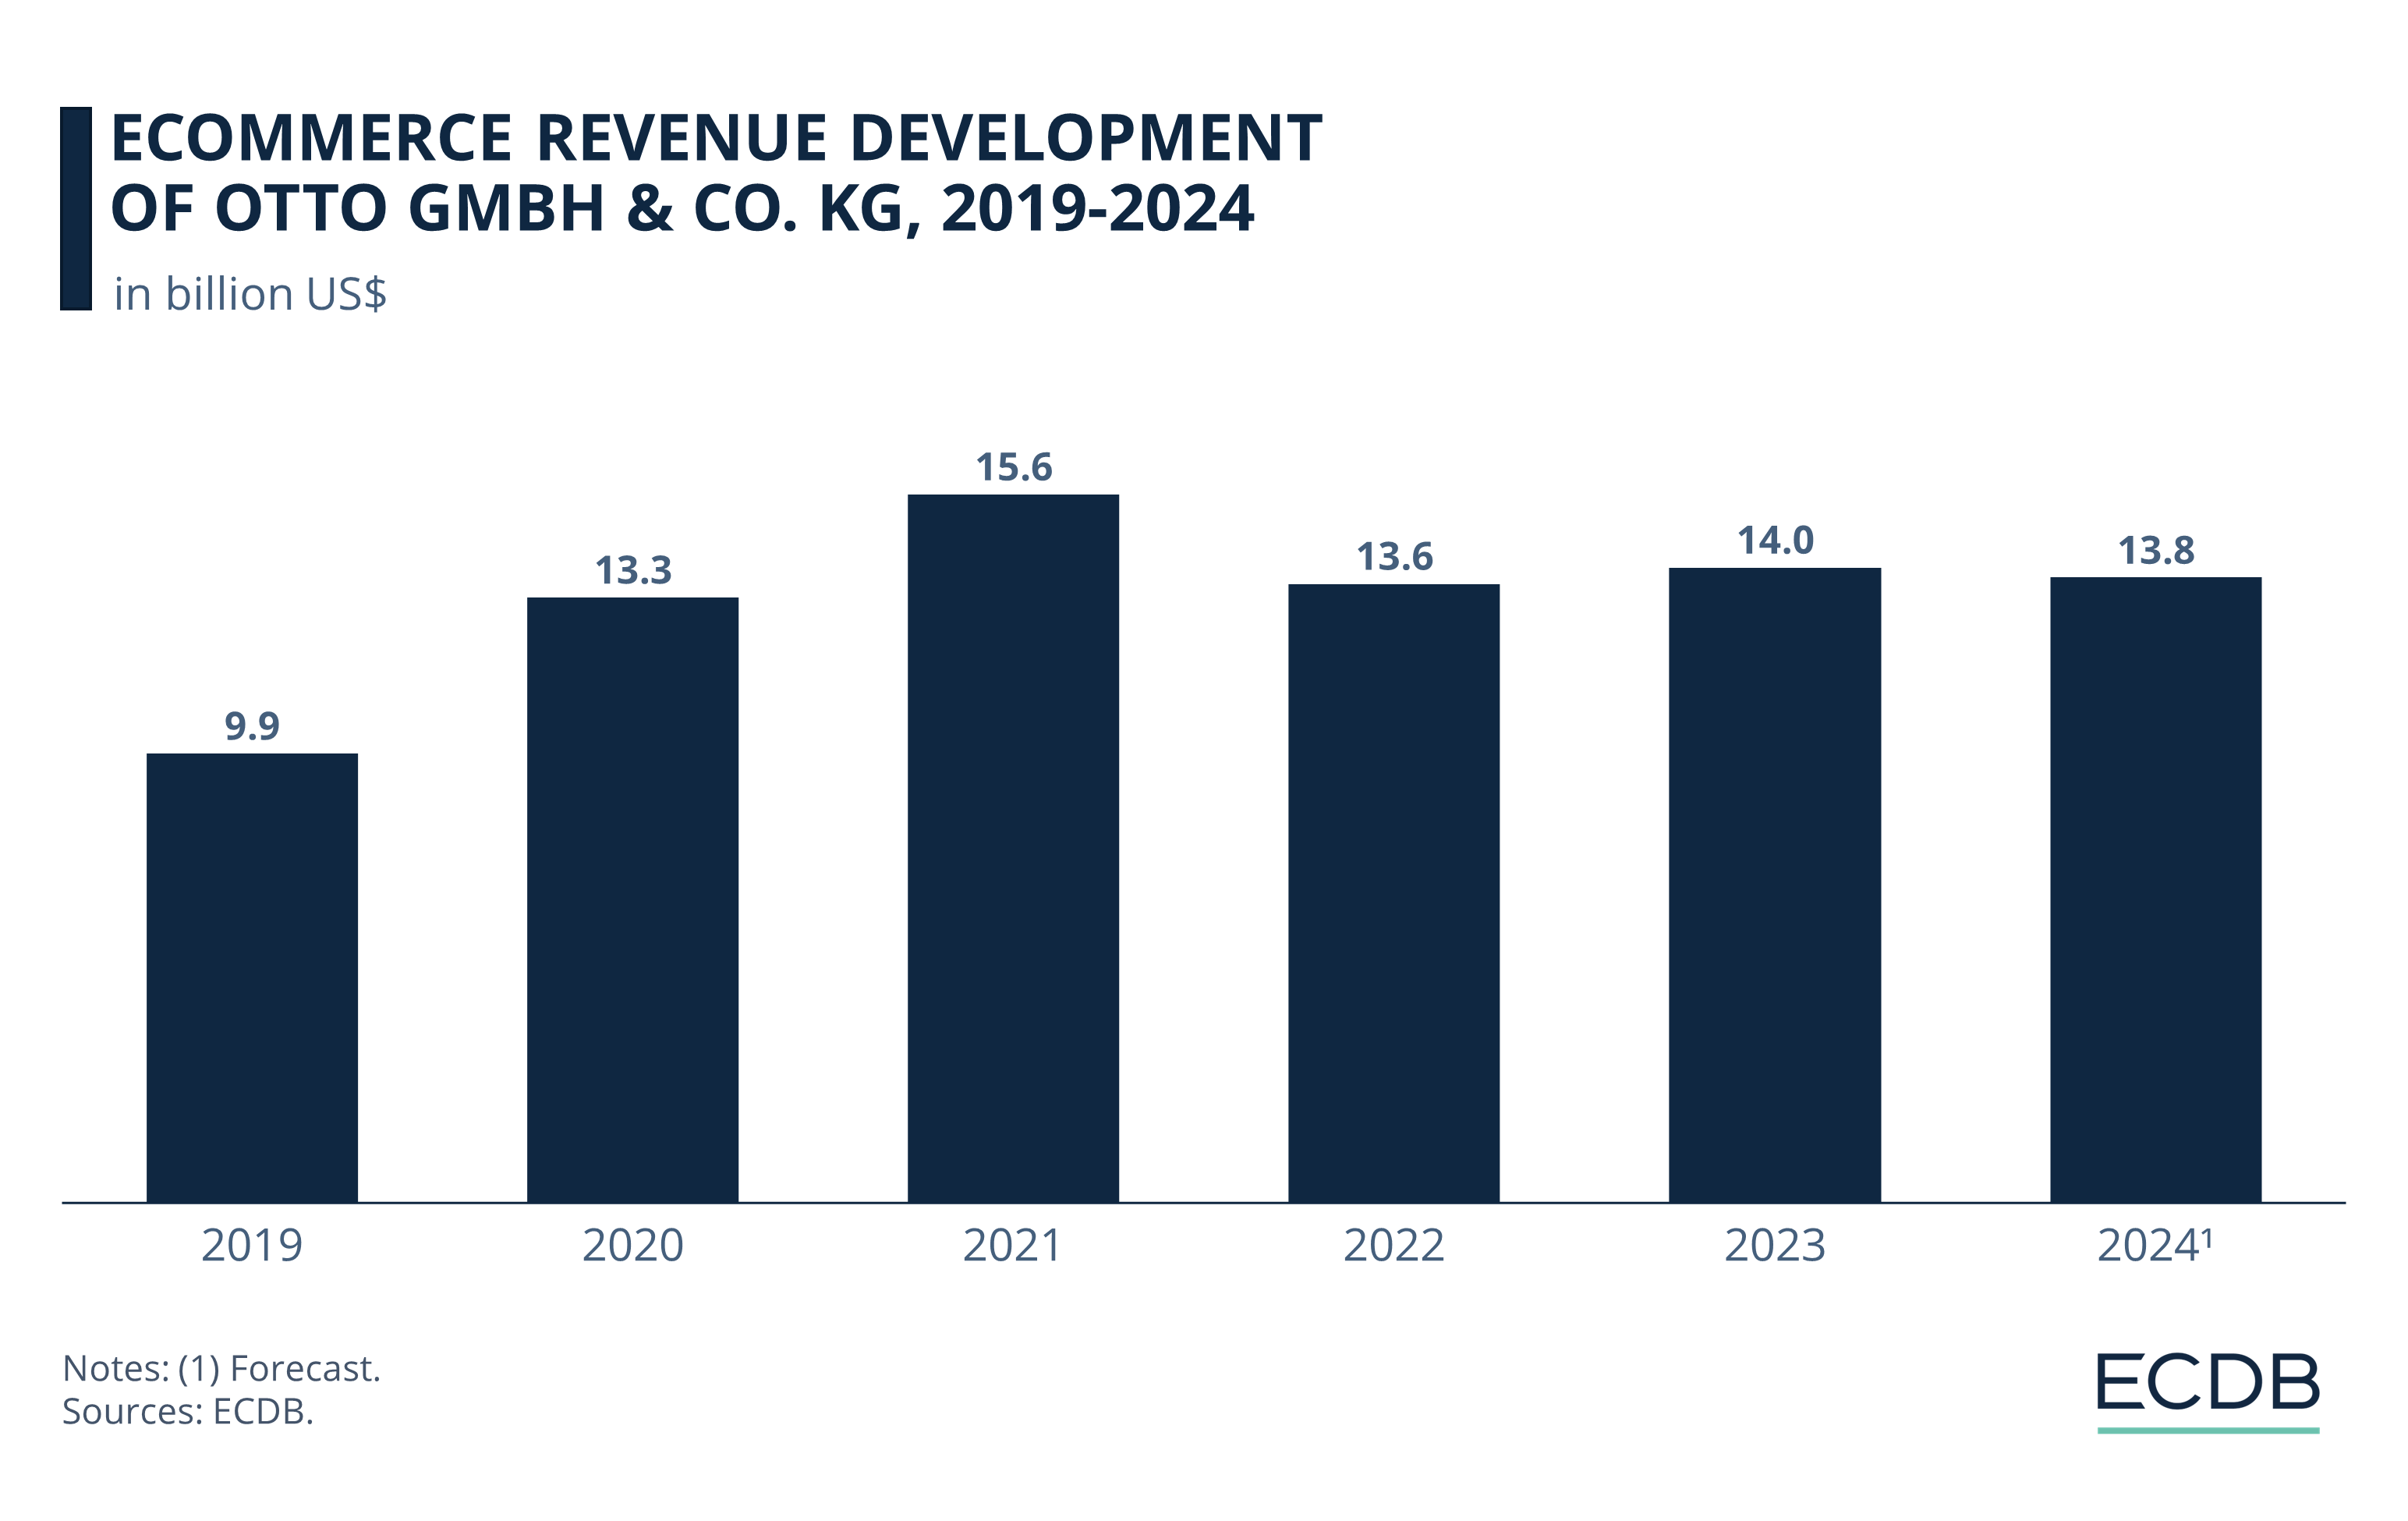 eCommerce Revenue Development of Otto GmbH & Co. KG, 2019-2024